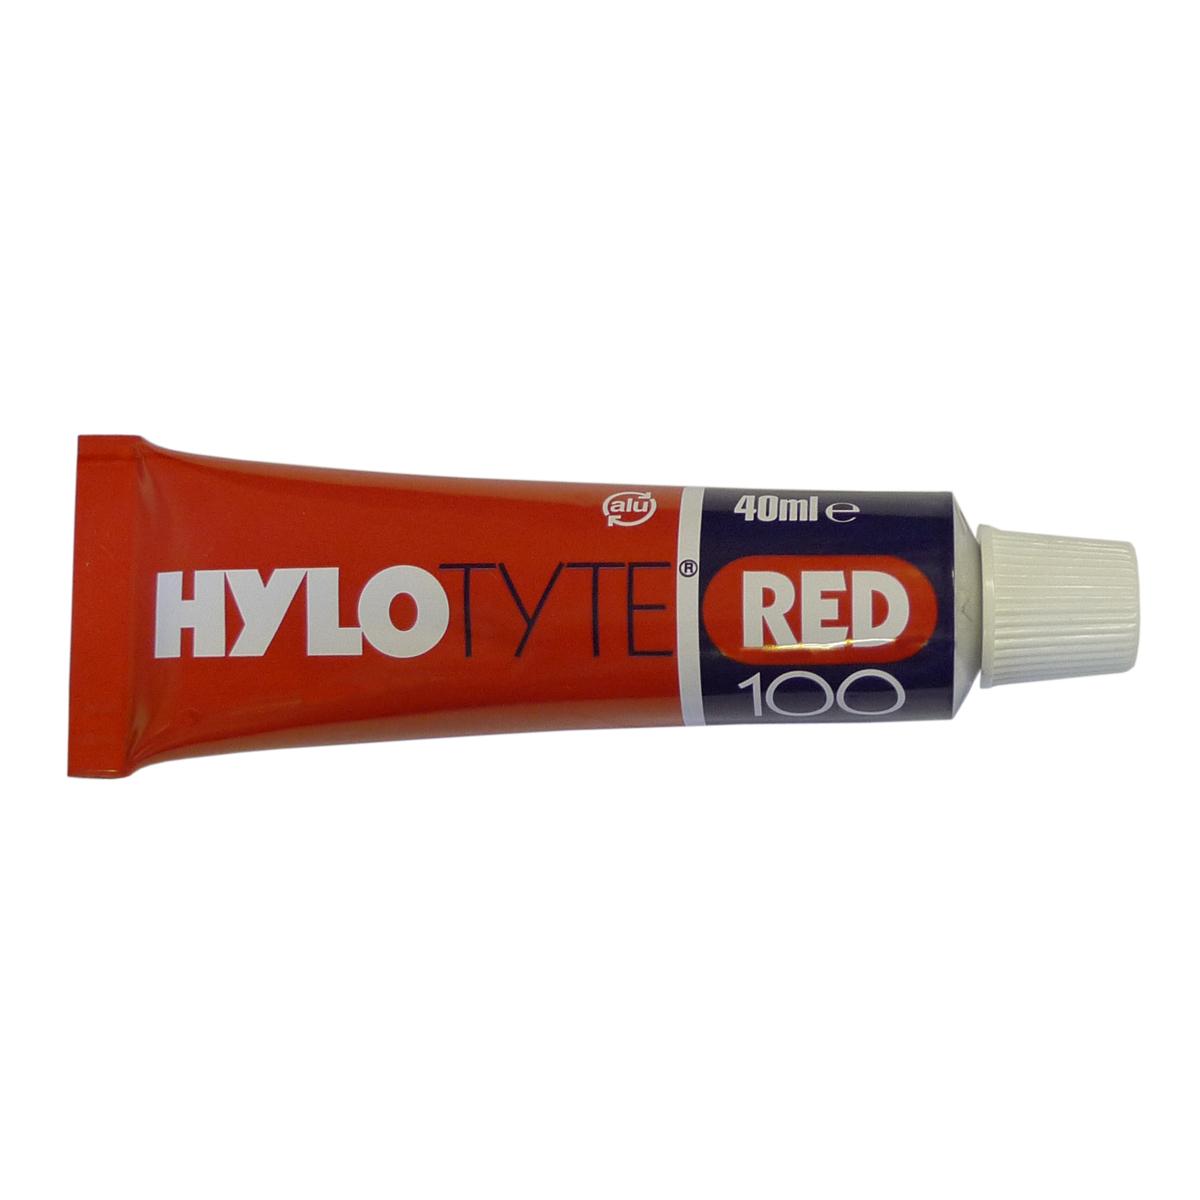 Hylomar Hylotyte Red 100 Junta Compuesto